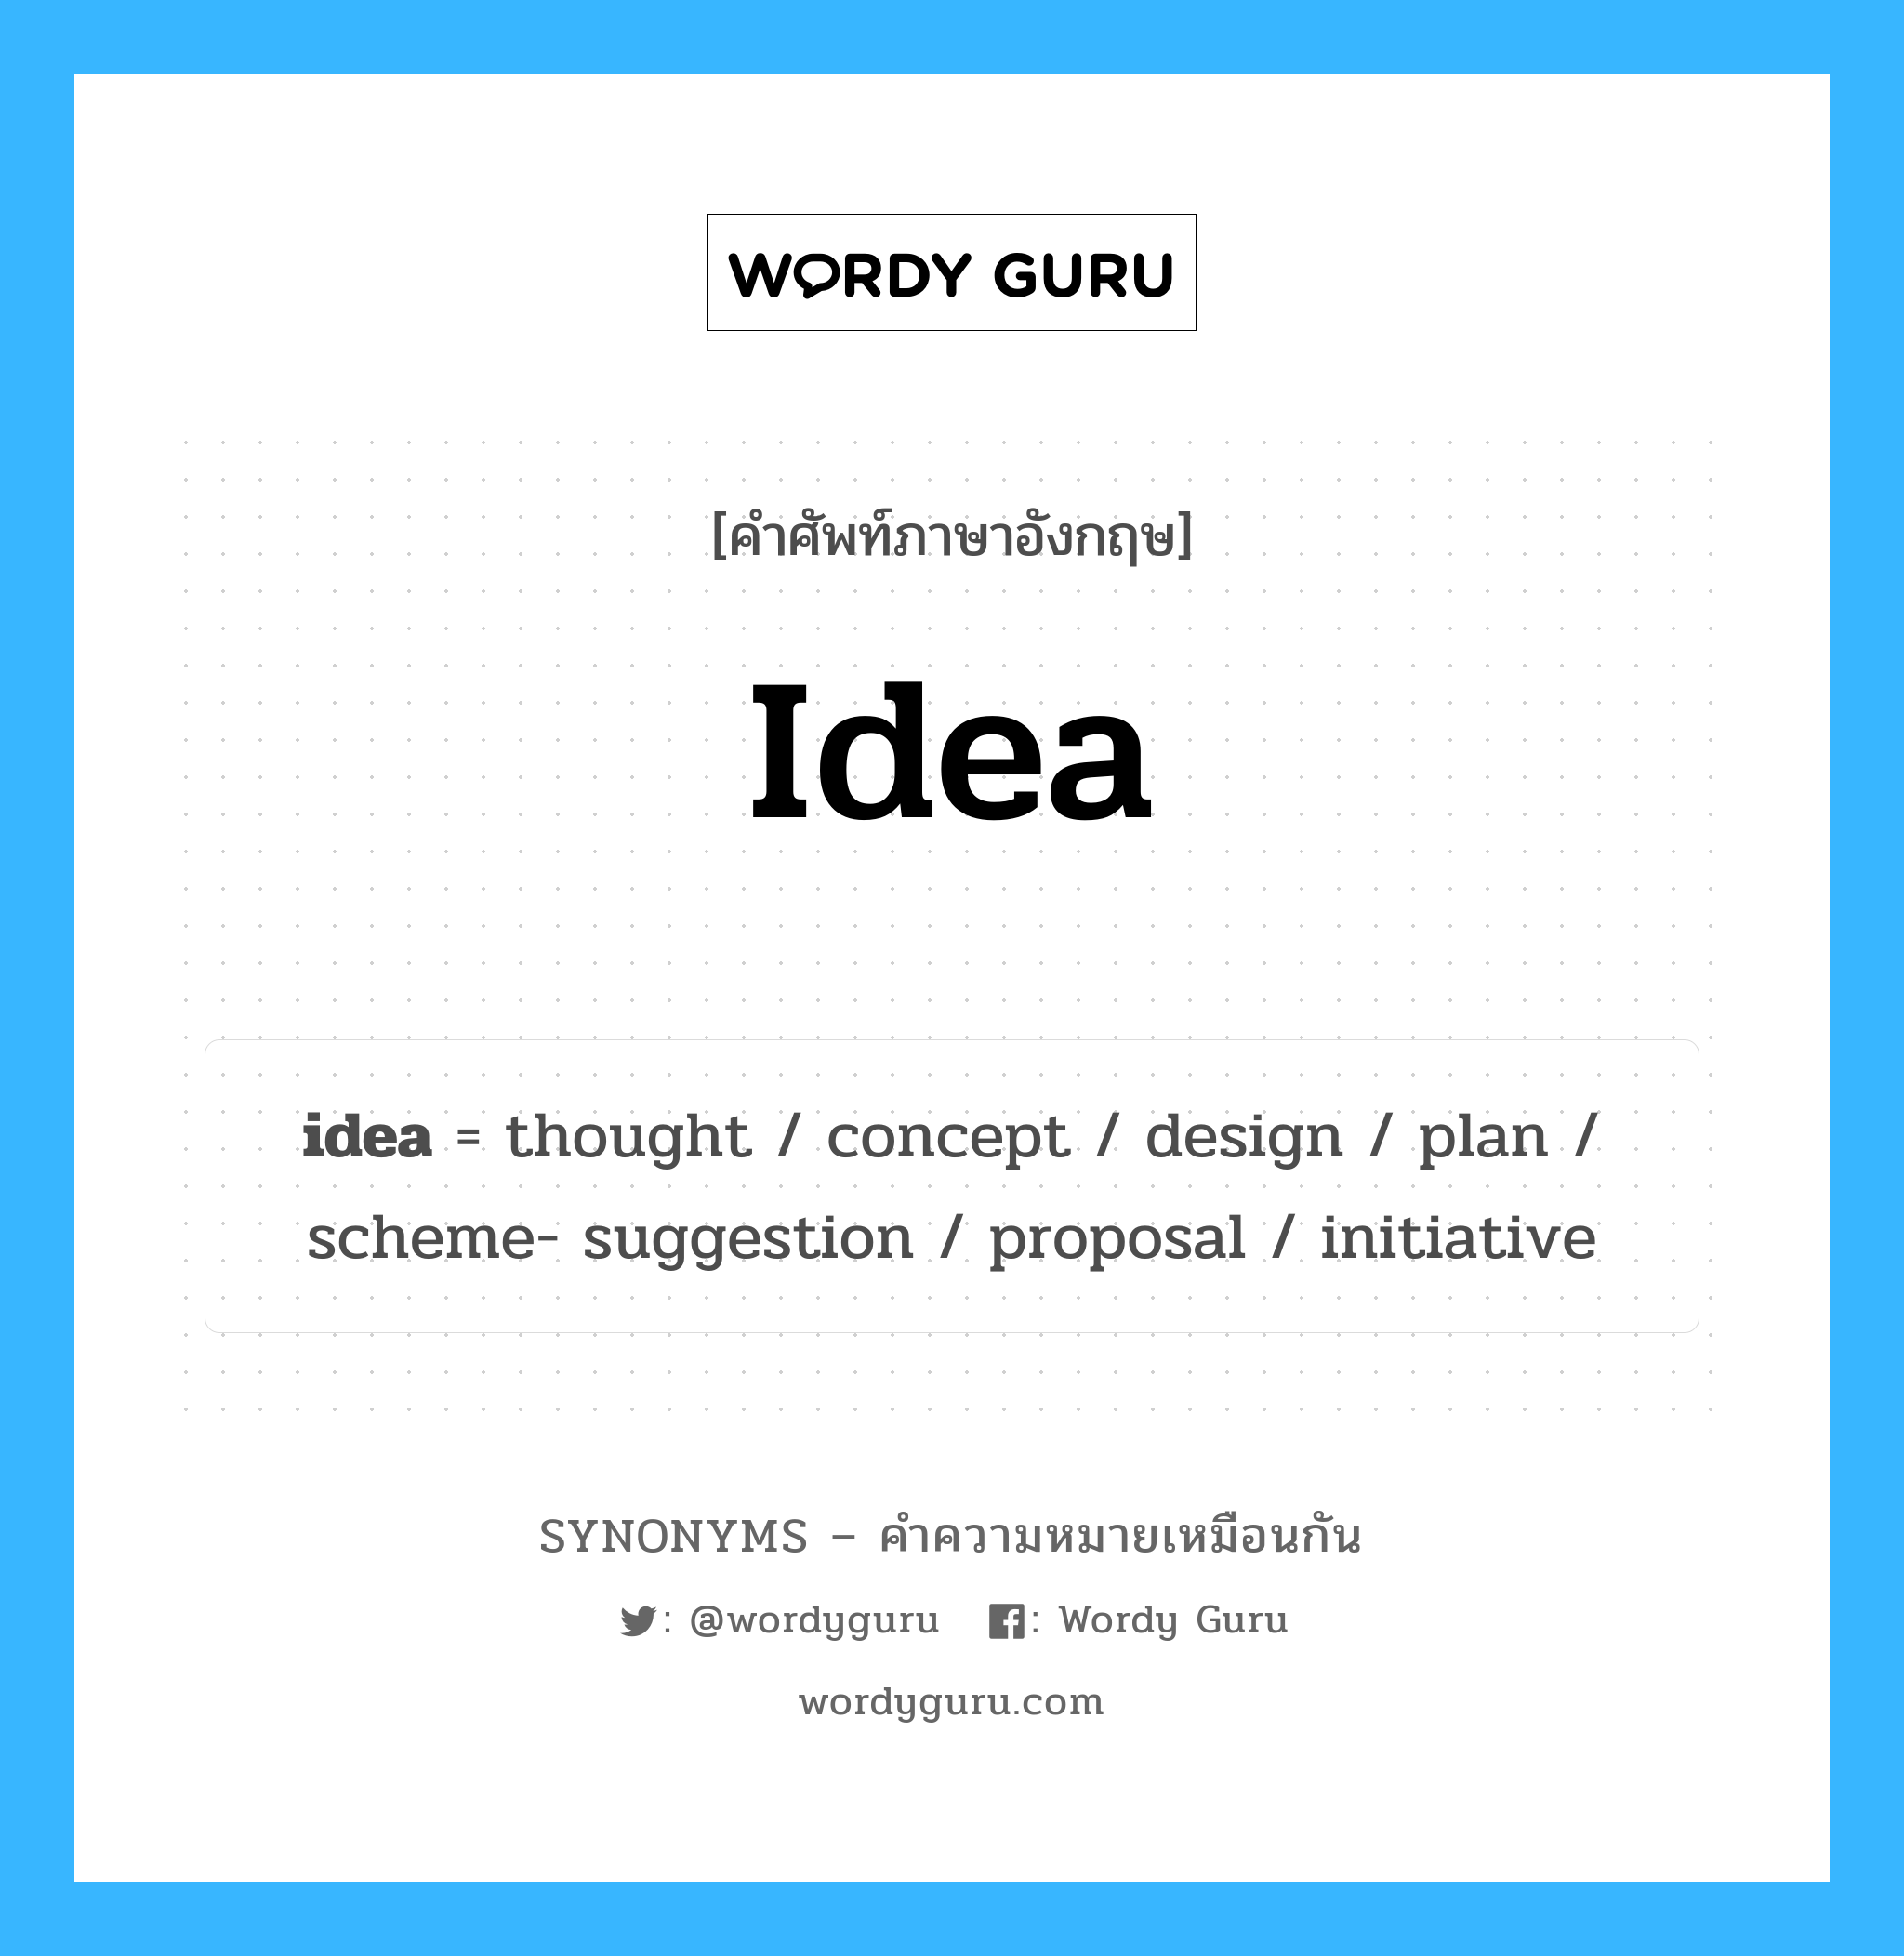 idea เป็นหนึ่งใน design และมีคำอื่น ๆ อีกดังนี้, คำศัพท์ภาษาอังกฤษ idea ความหมายคล้ายกันกับ design แปลว่า การออกแบบ หมวด design